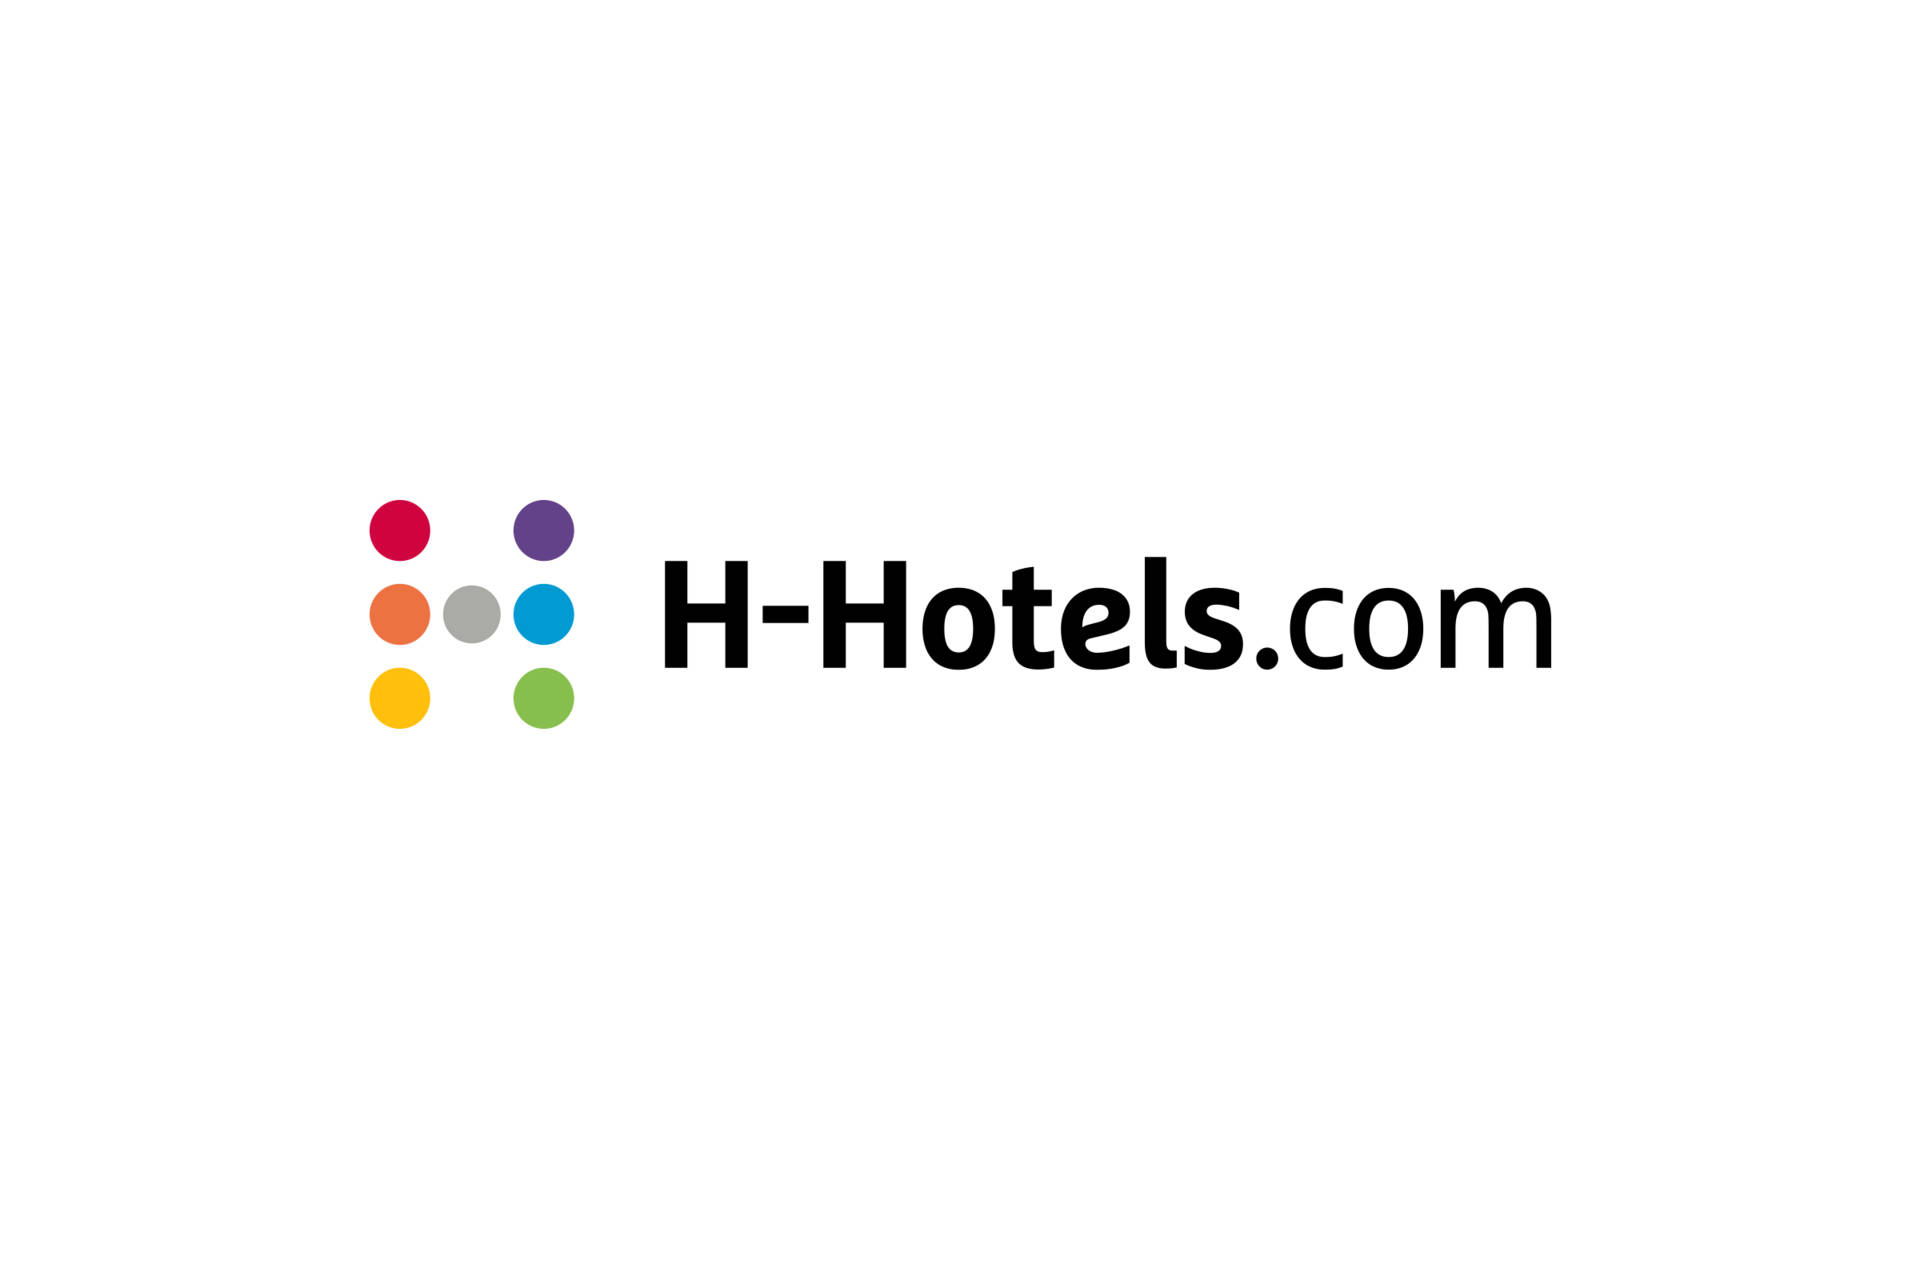 H-Hotels.com weiter auf Wachstumskurs